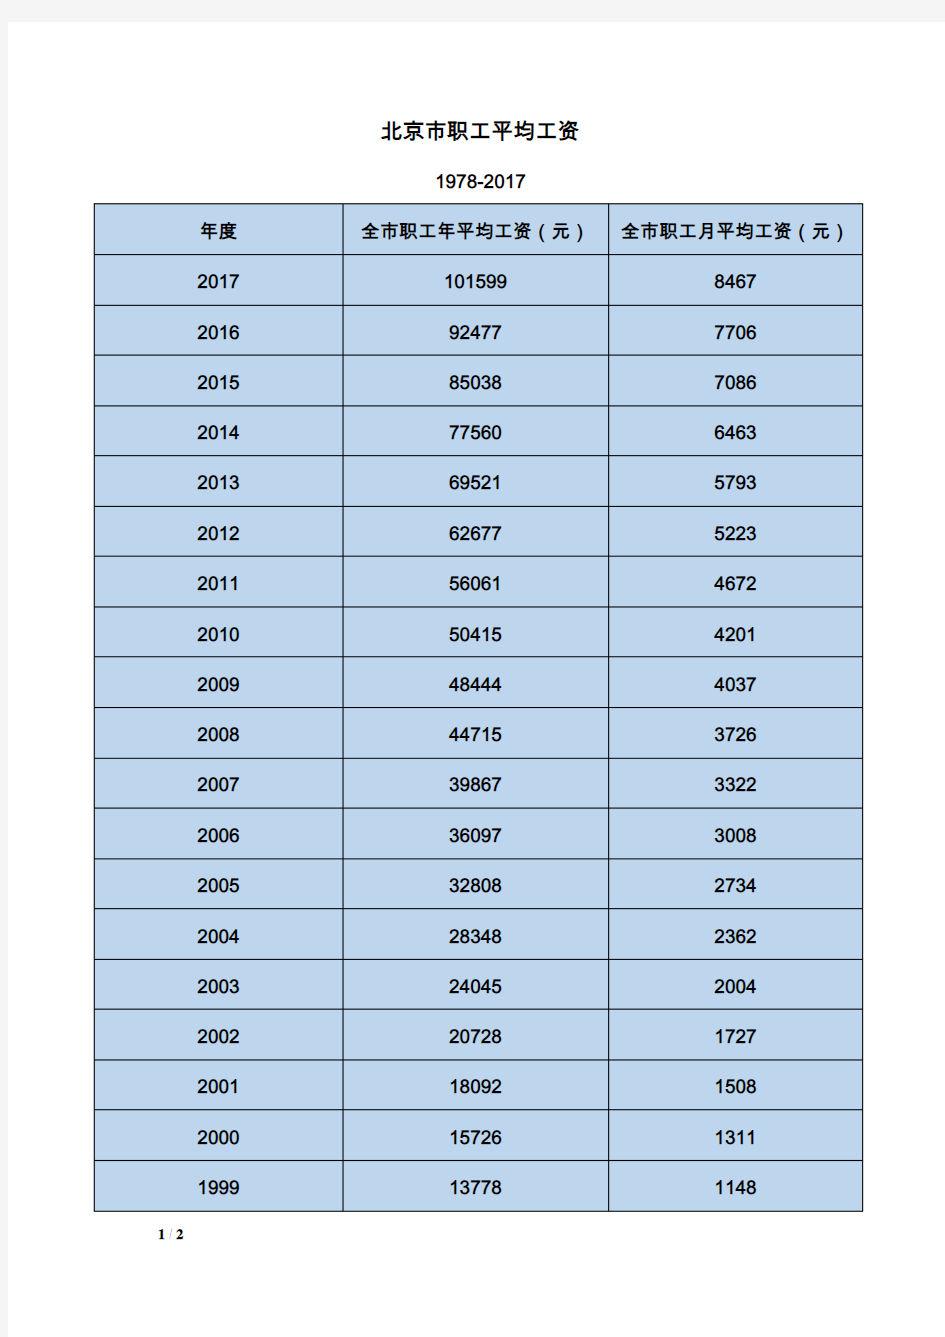 北京市职工平均工资 1978-2017